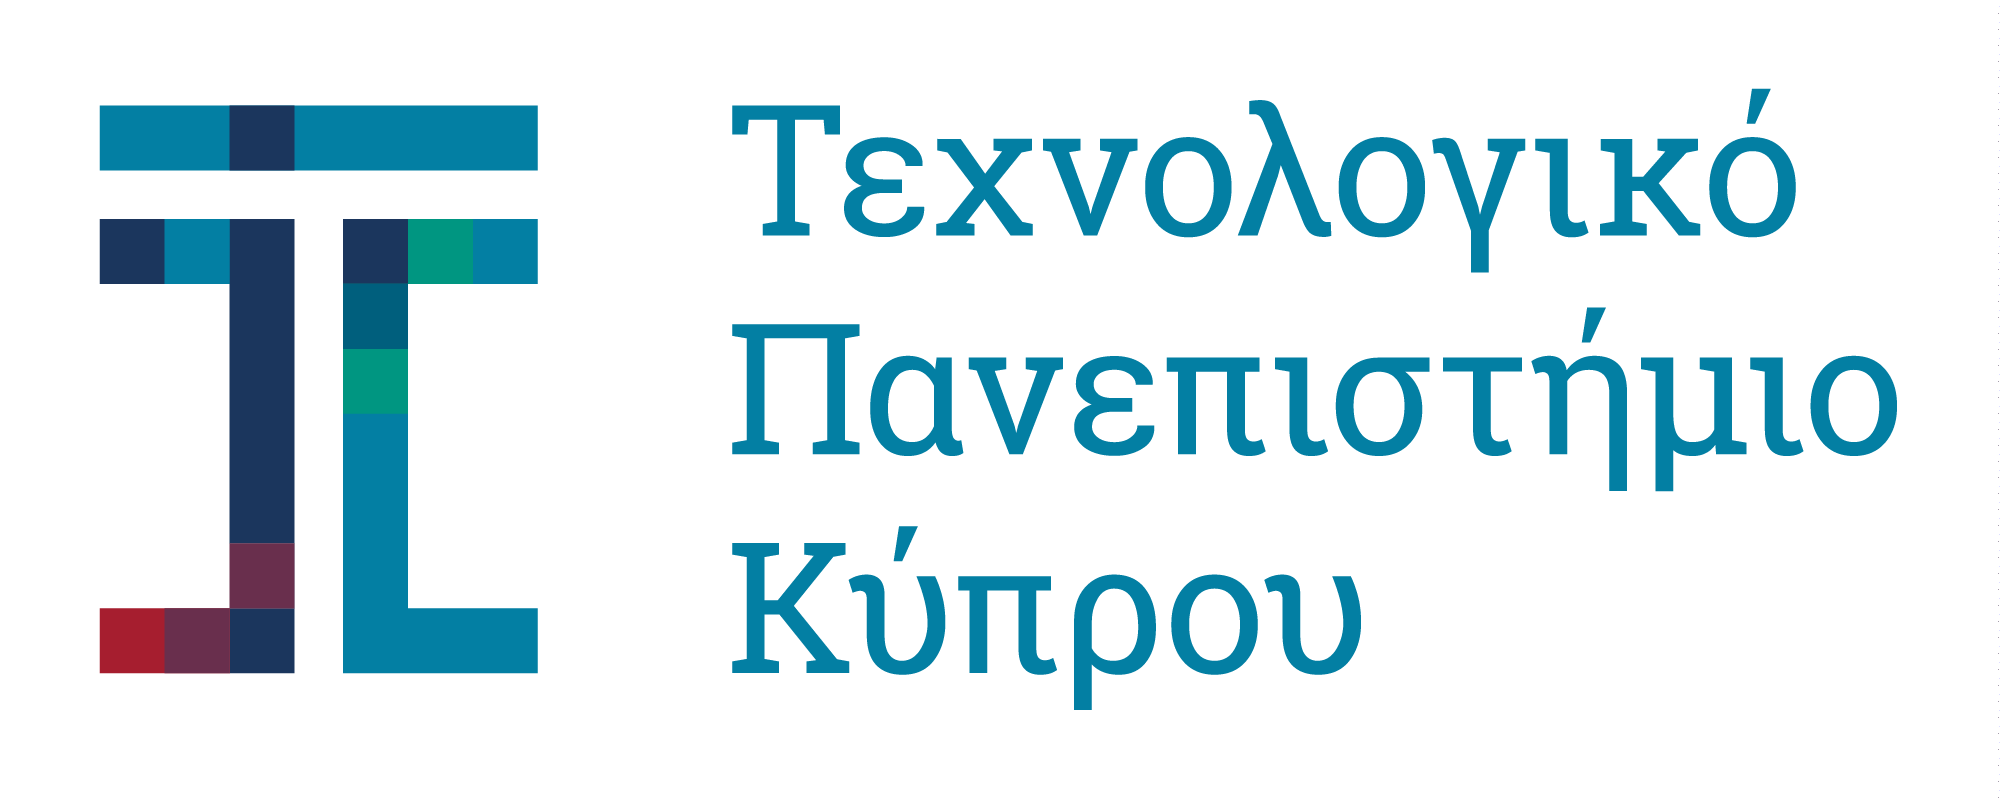 Τεχνολογικό Πανεπιστήμιο Κύπρου